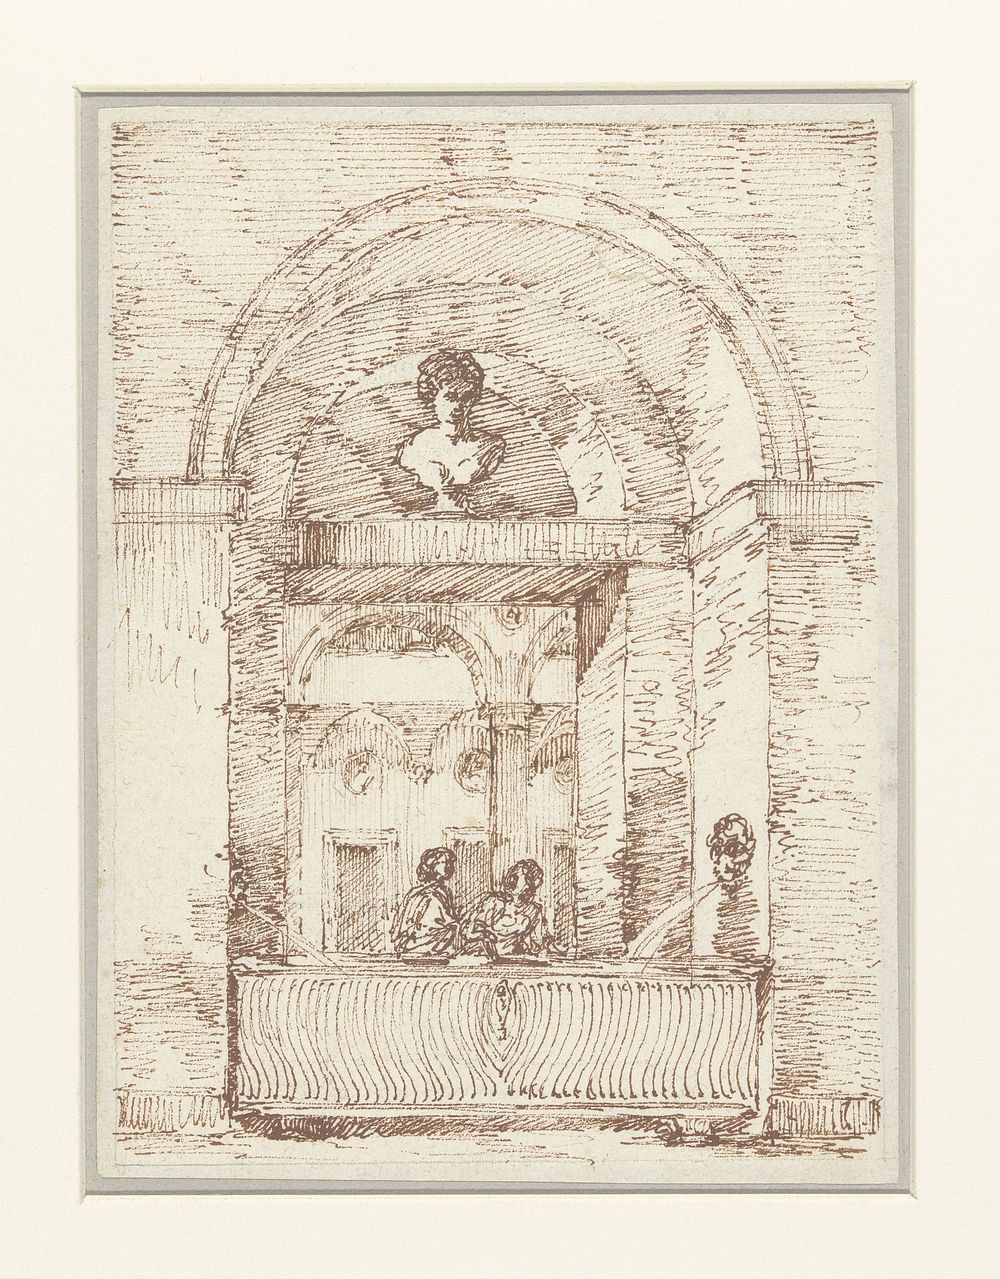 Romeins portiek met twee vrouwen die water halen (1787 - 1811) by Victor Jean Nicolle